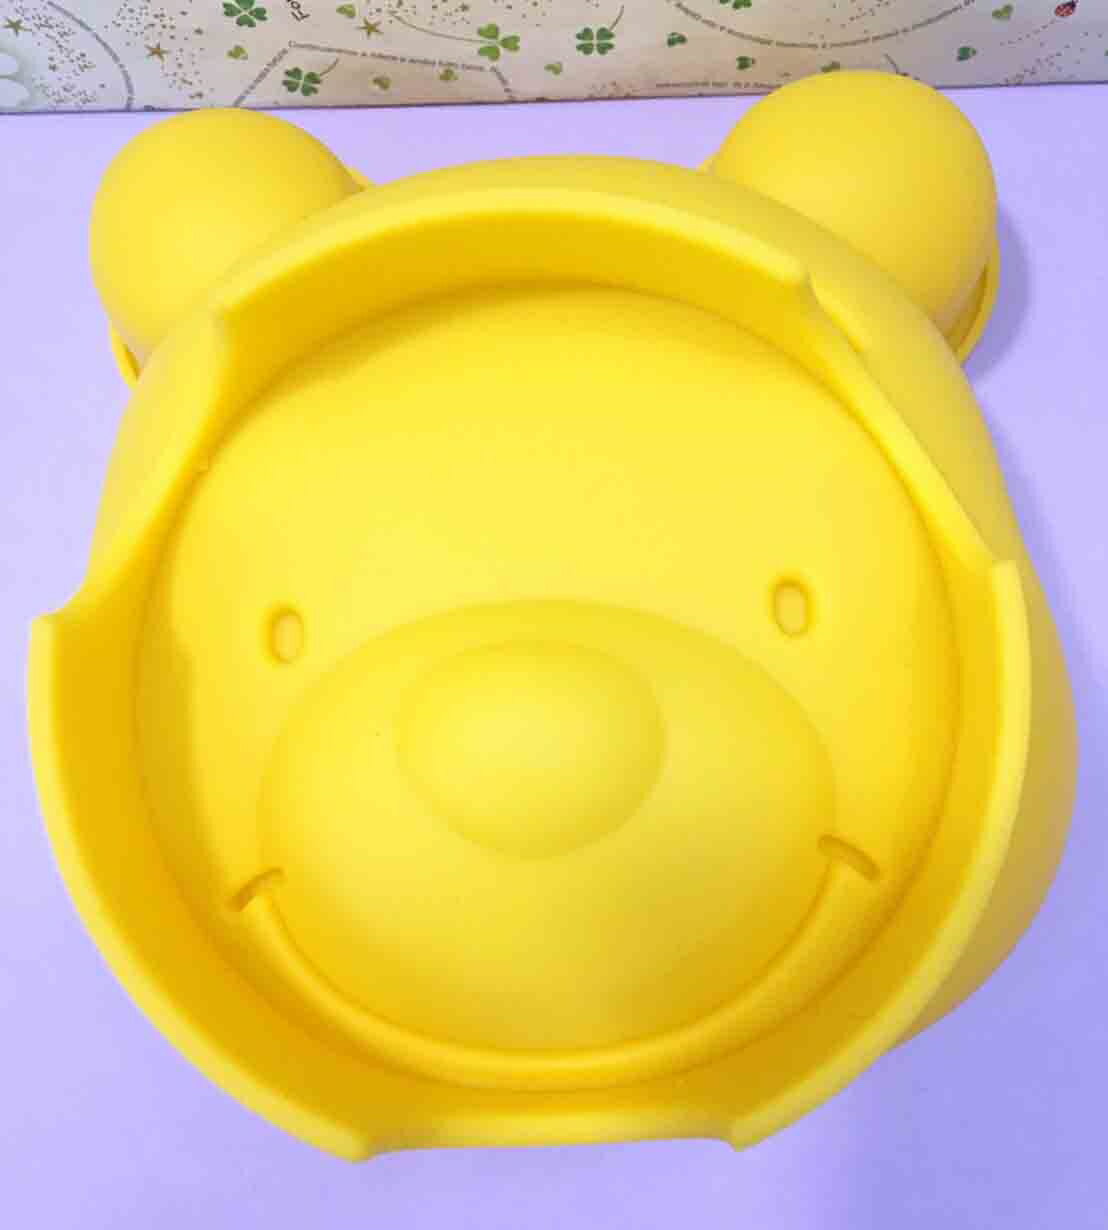 【震撼精品百貨】Winnie the Pooh 小熊維尼 蛋糕模具*09059 震撼日式精品百貨